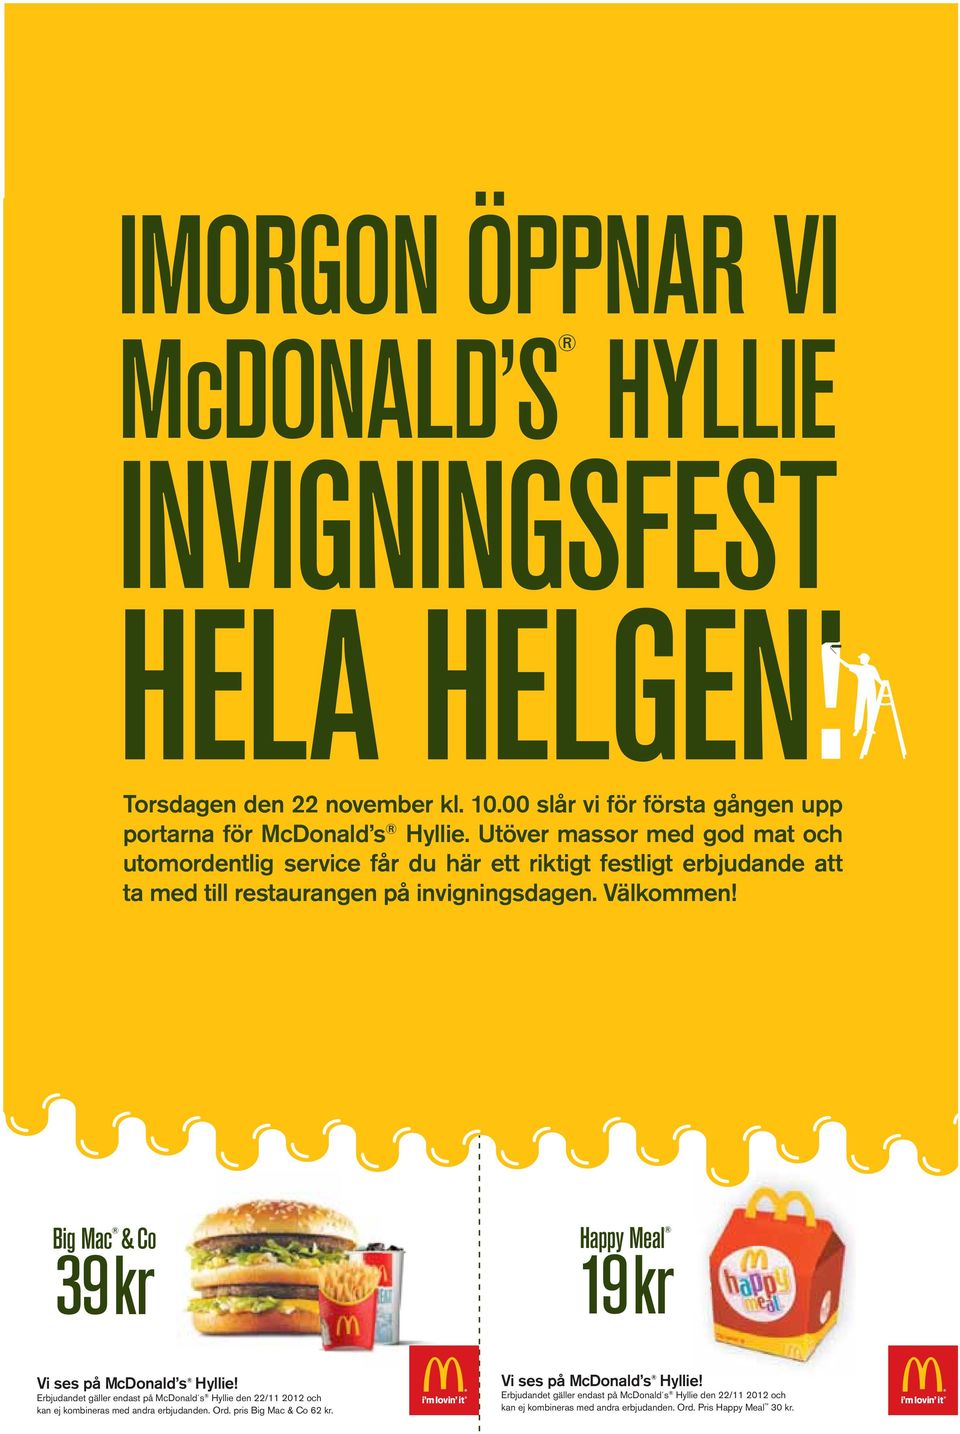 Big Mac & Co 39 kr Happy Meal 19 kr Vi ses på McDonald s Hyllie! Erbjudandet gäller endast på McDonald s Hyllie den 22/11 2012 och kan ej kombineras med andra erbjudanden.